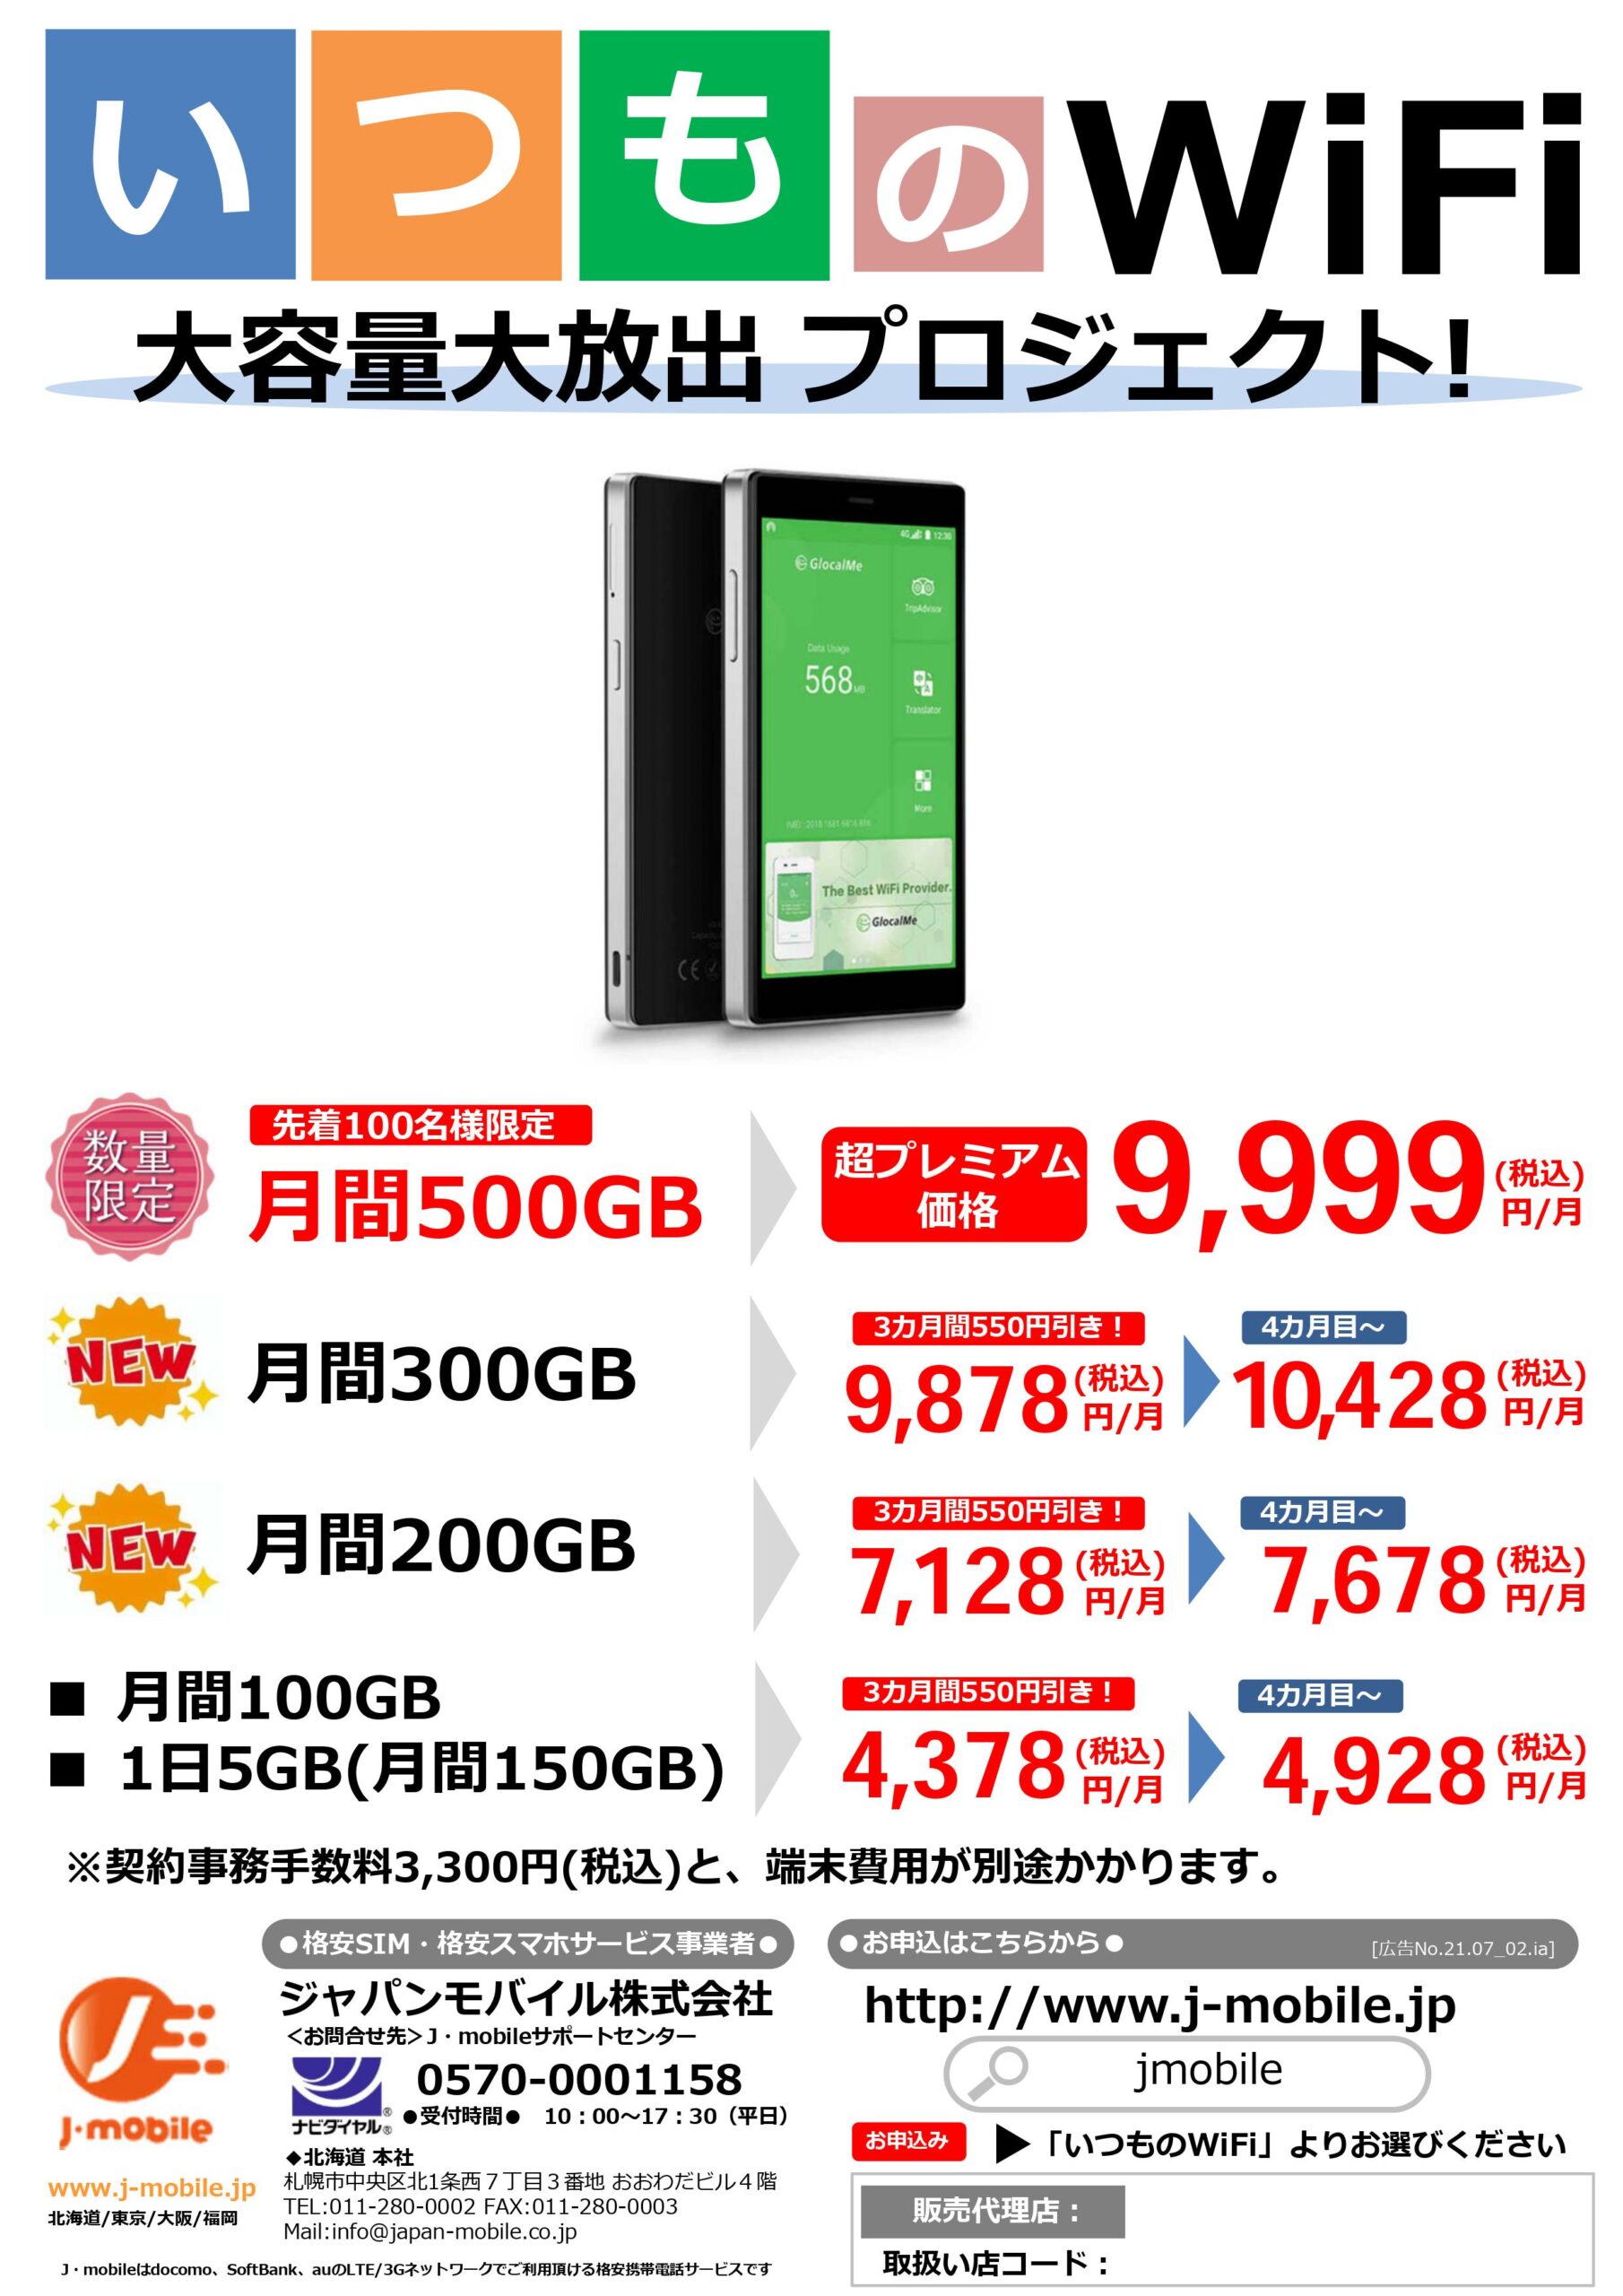 ジャパンモバイル株式会社 ／J-mobileの「いつものWiFi」500GBコースを9,999円(税込)で数量限定発売！  無料プレスリリース「PR-FREE」